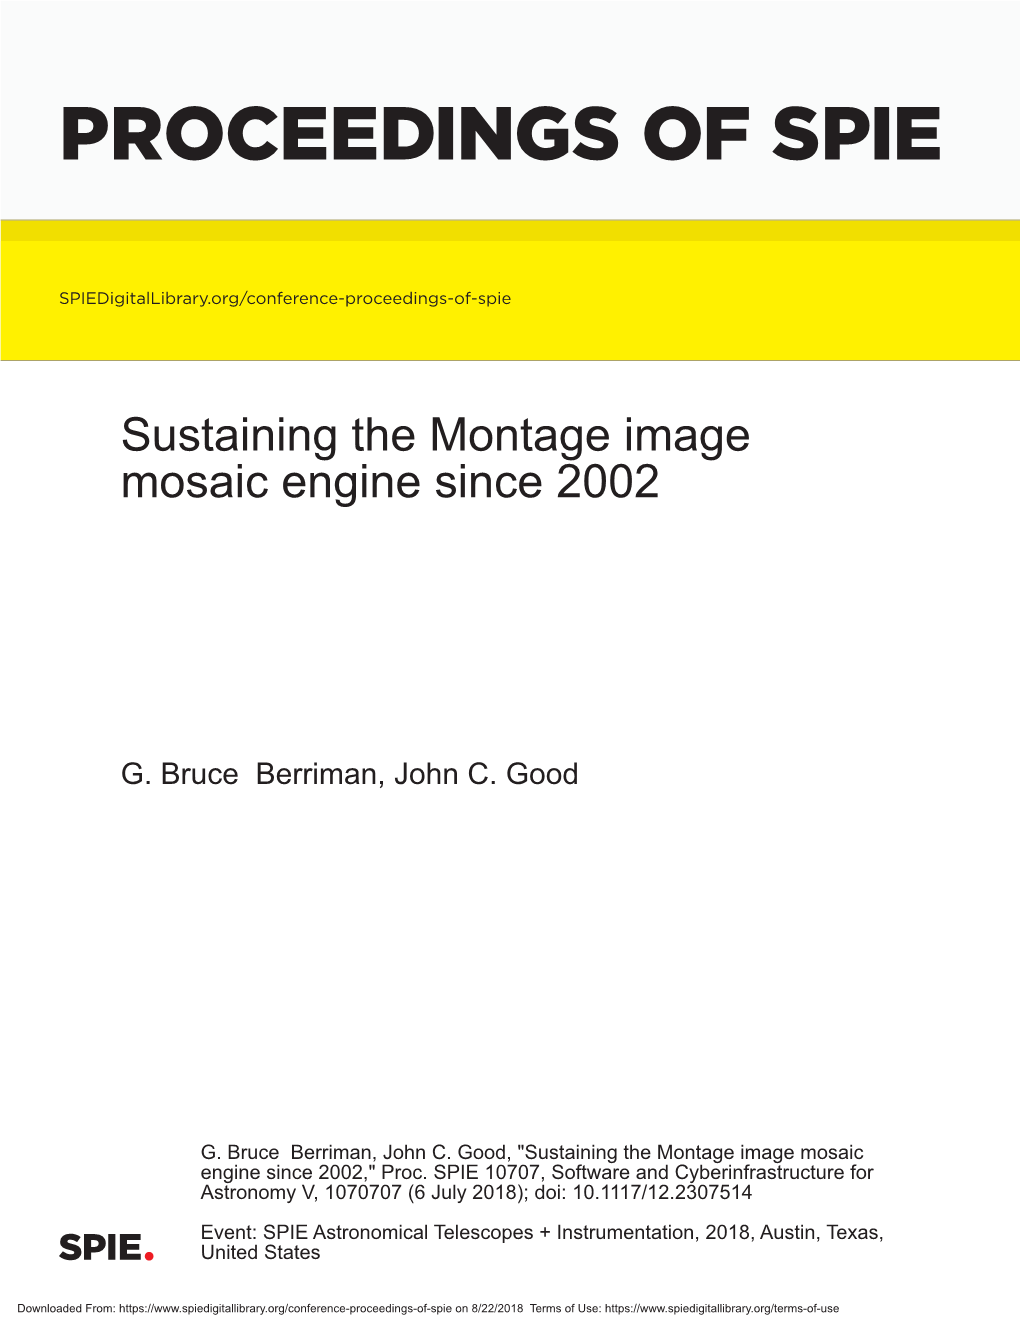 Sustaining the Montage Image Mosaic Engine Since 2002